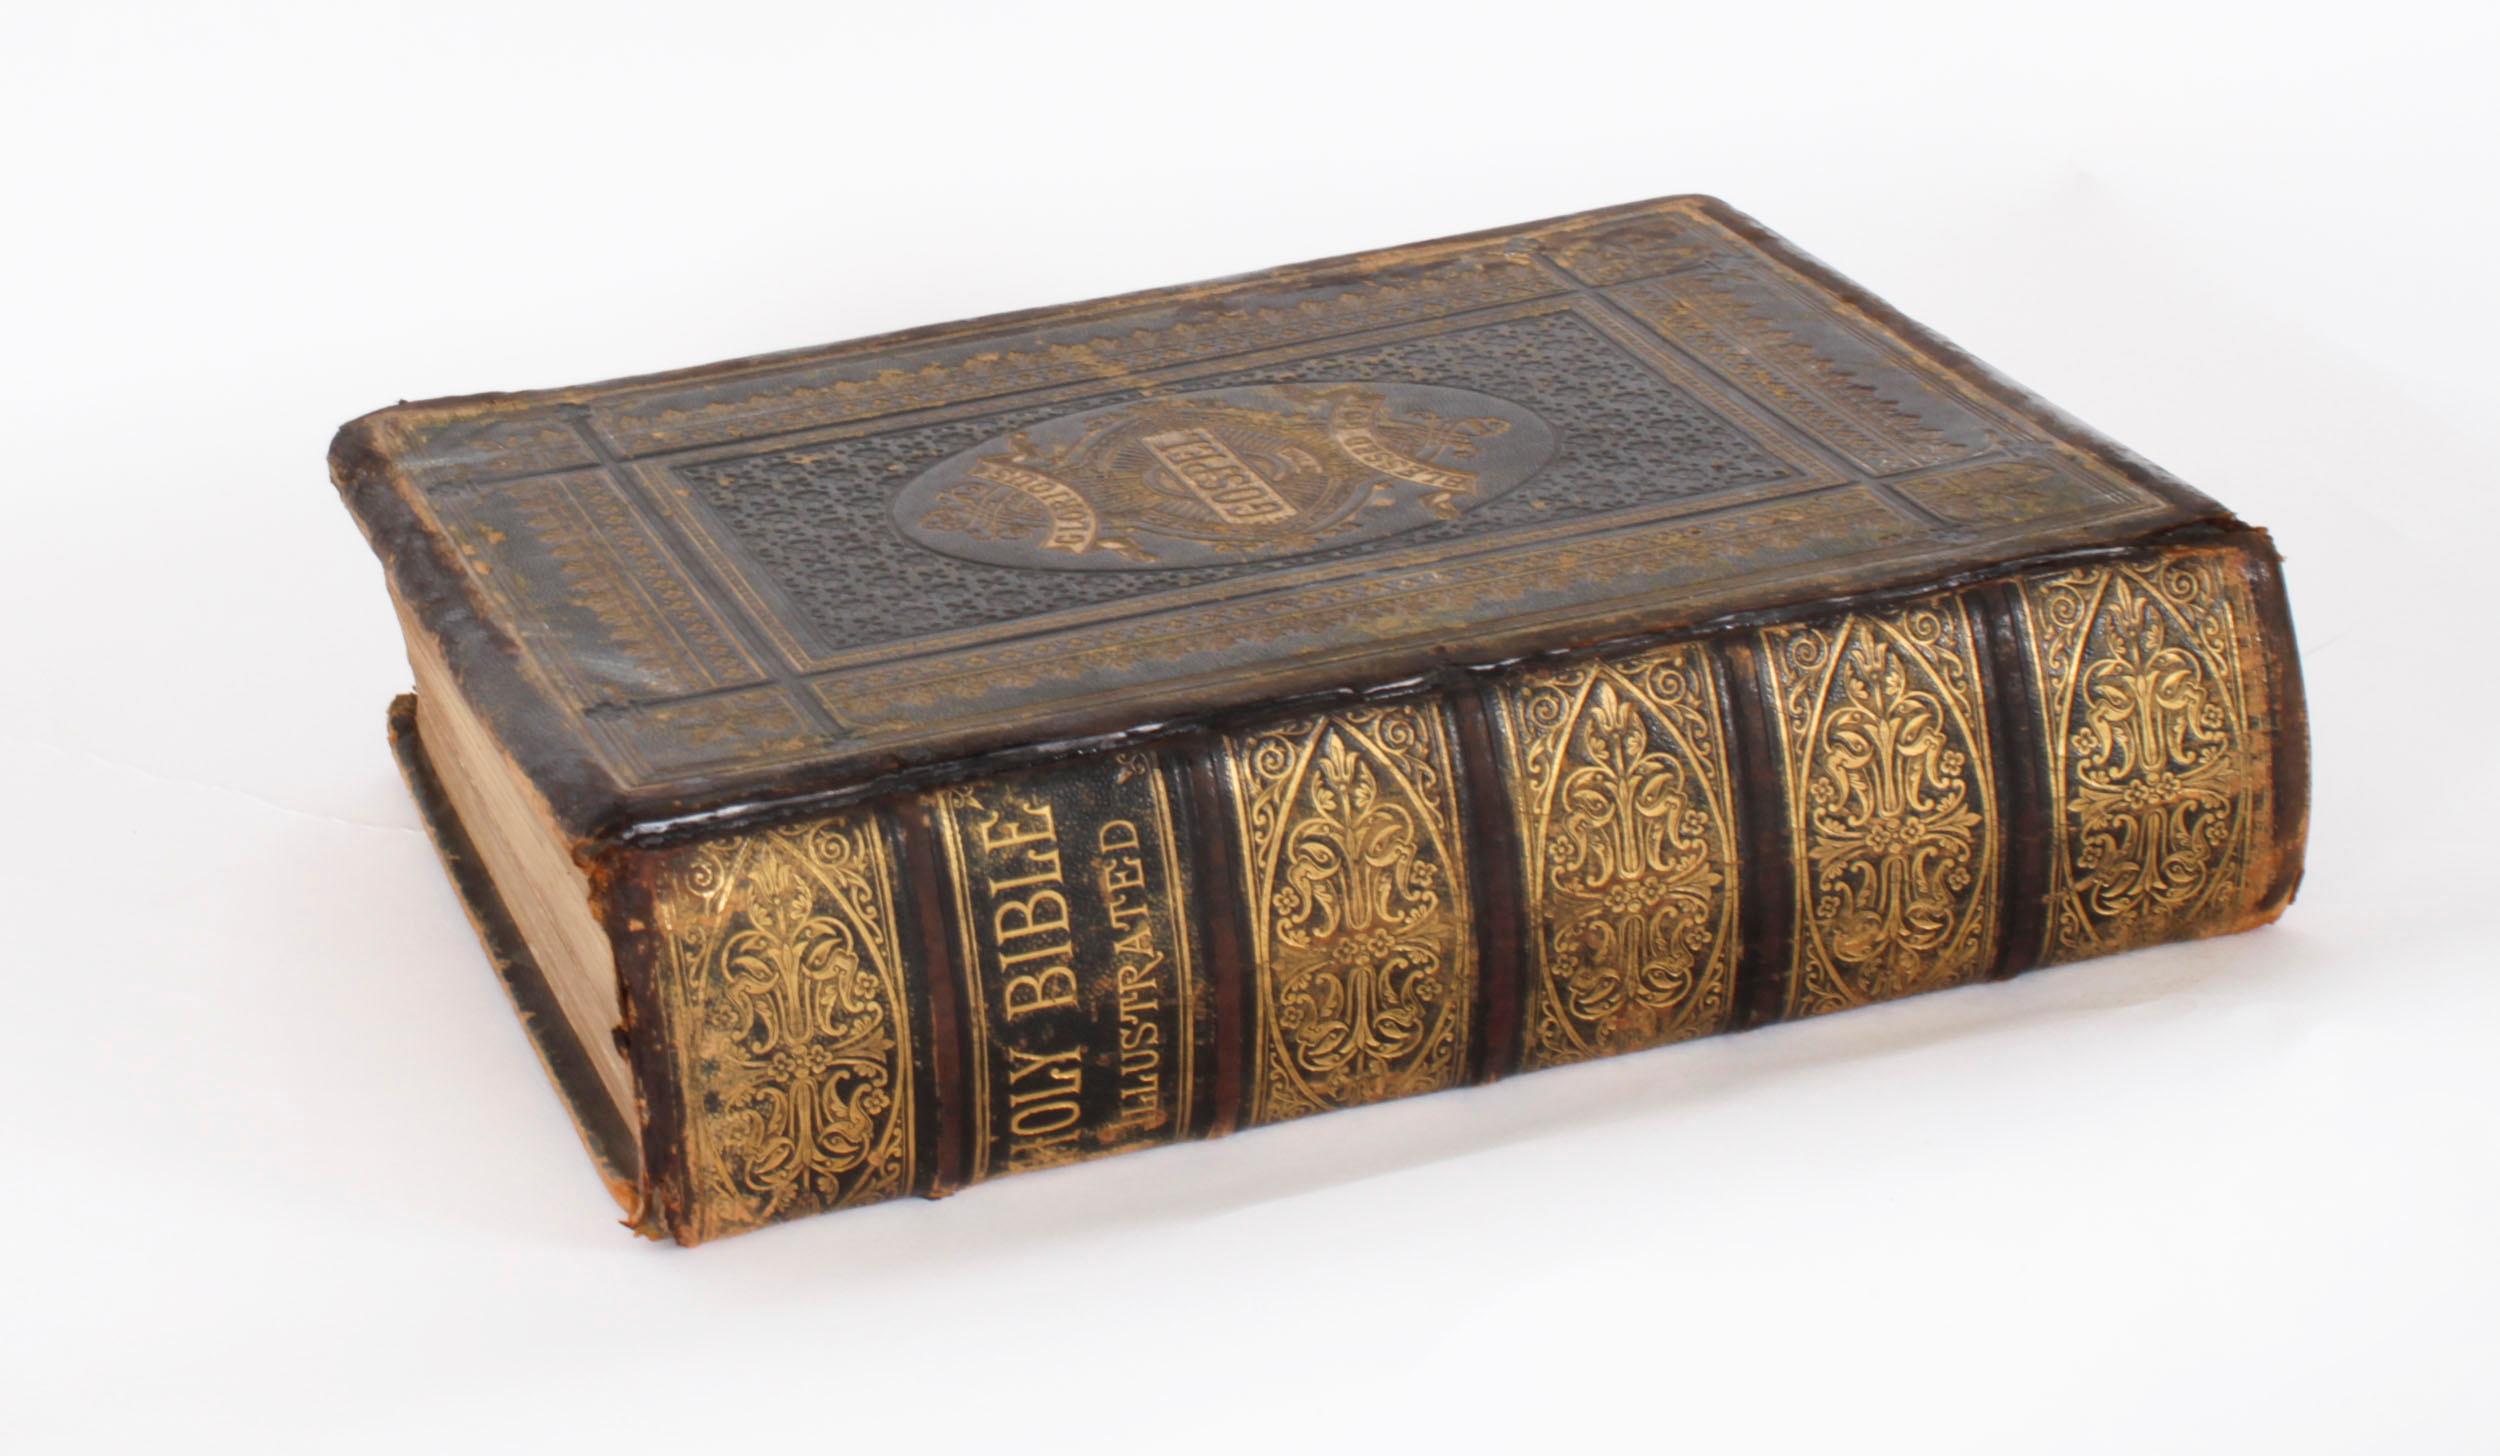 Cuir Antique Bible de famille victorienne reliée en cuir vers 1850